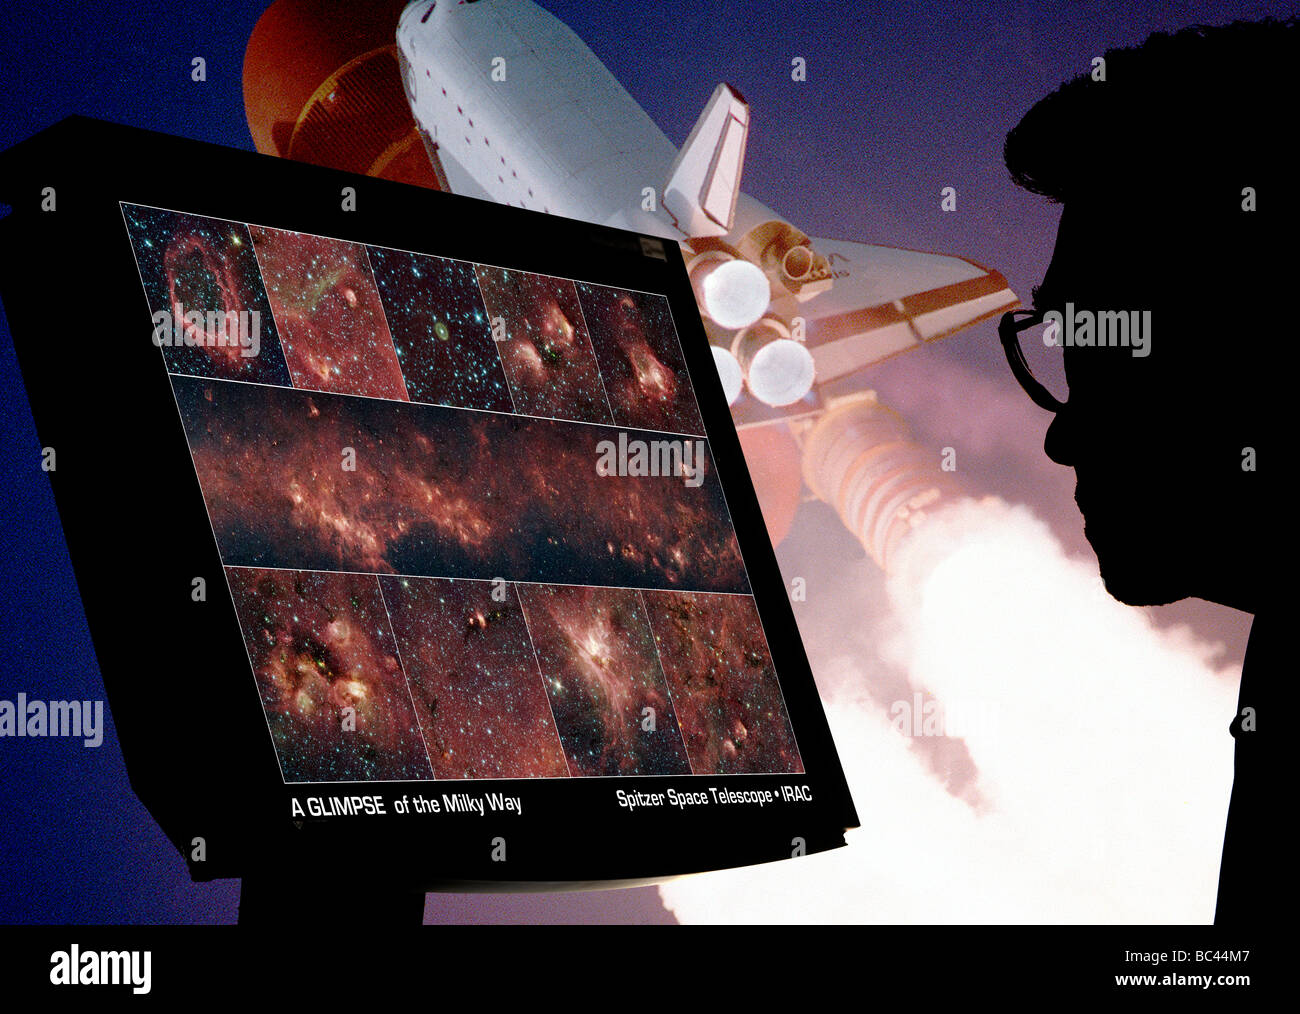 Astronomie studiert Galaxien auf Computer mit NASA-Shuttle-Projektion im Hintergrund Stockfoto